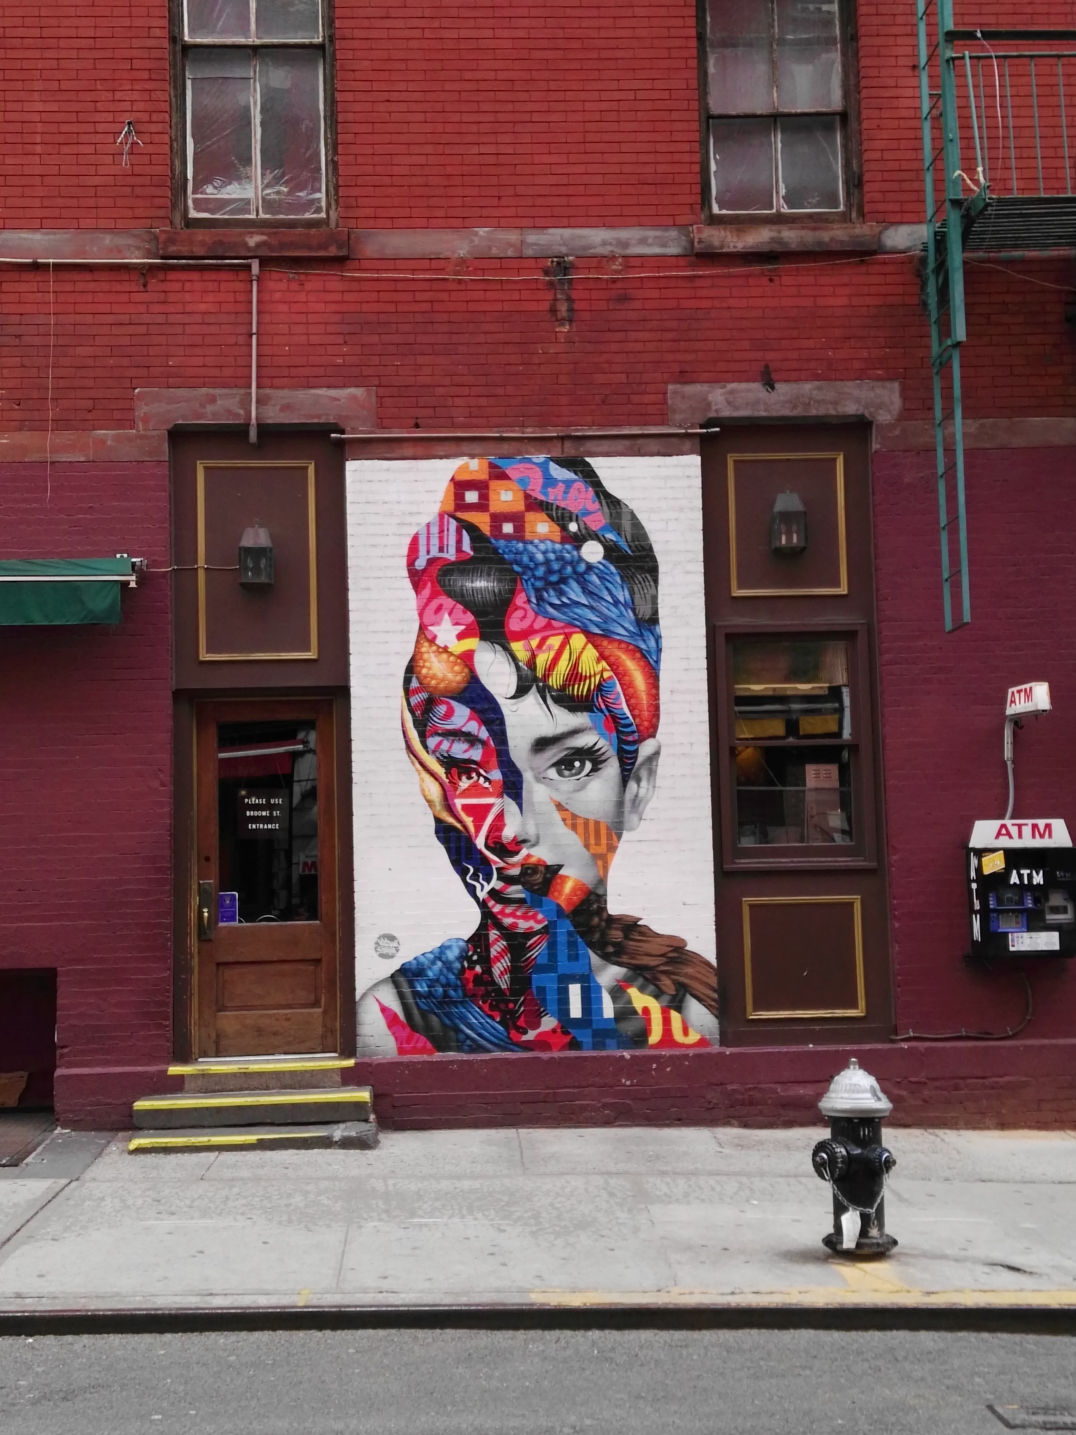 USA / New York / Art / Street art